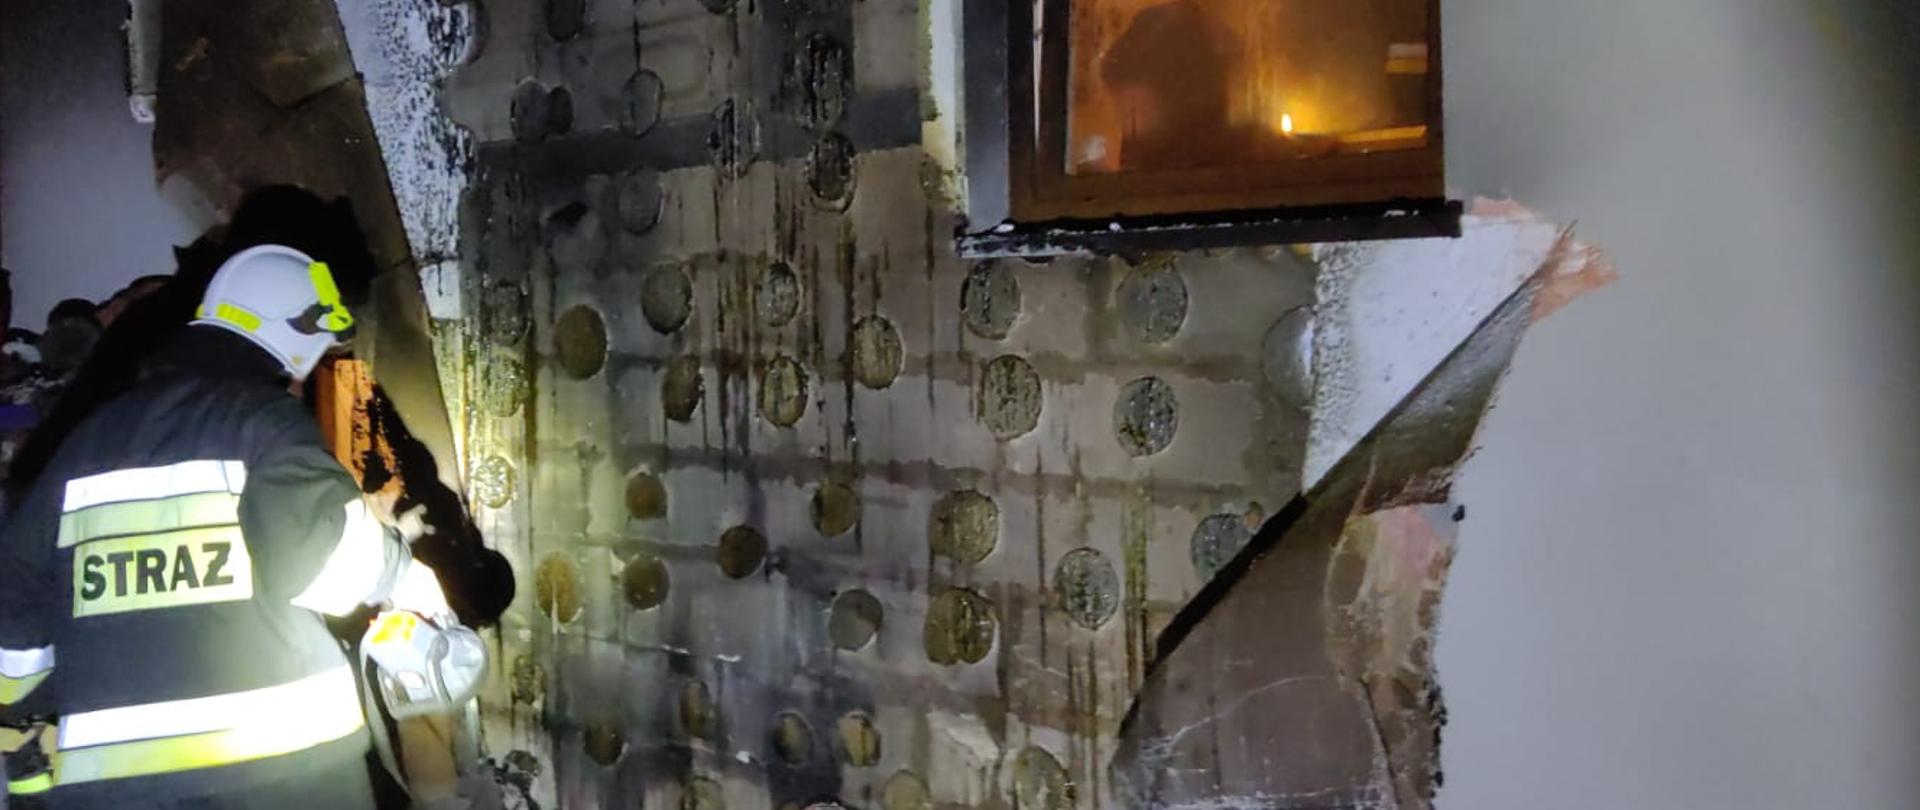 Zdjęcie przedstawia spaloną część elewacji na budynku jednorodzinnym. Pora nocna. Strażak ubraniu specjalnym świeci latarką na ugaszoną ścianę.